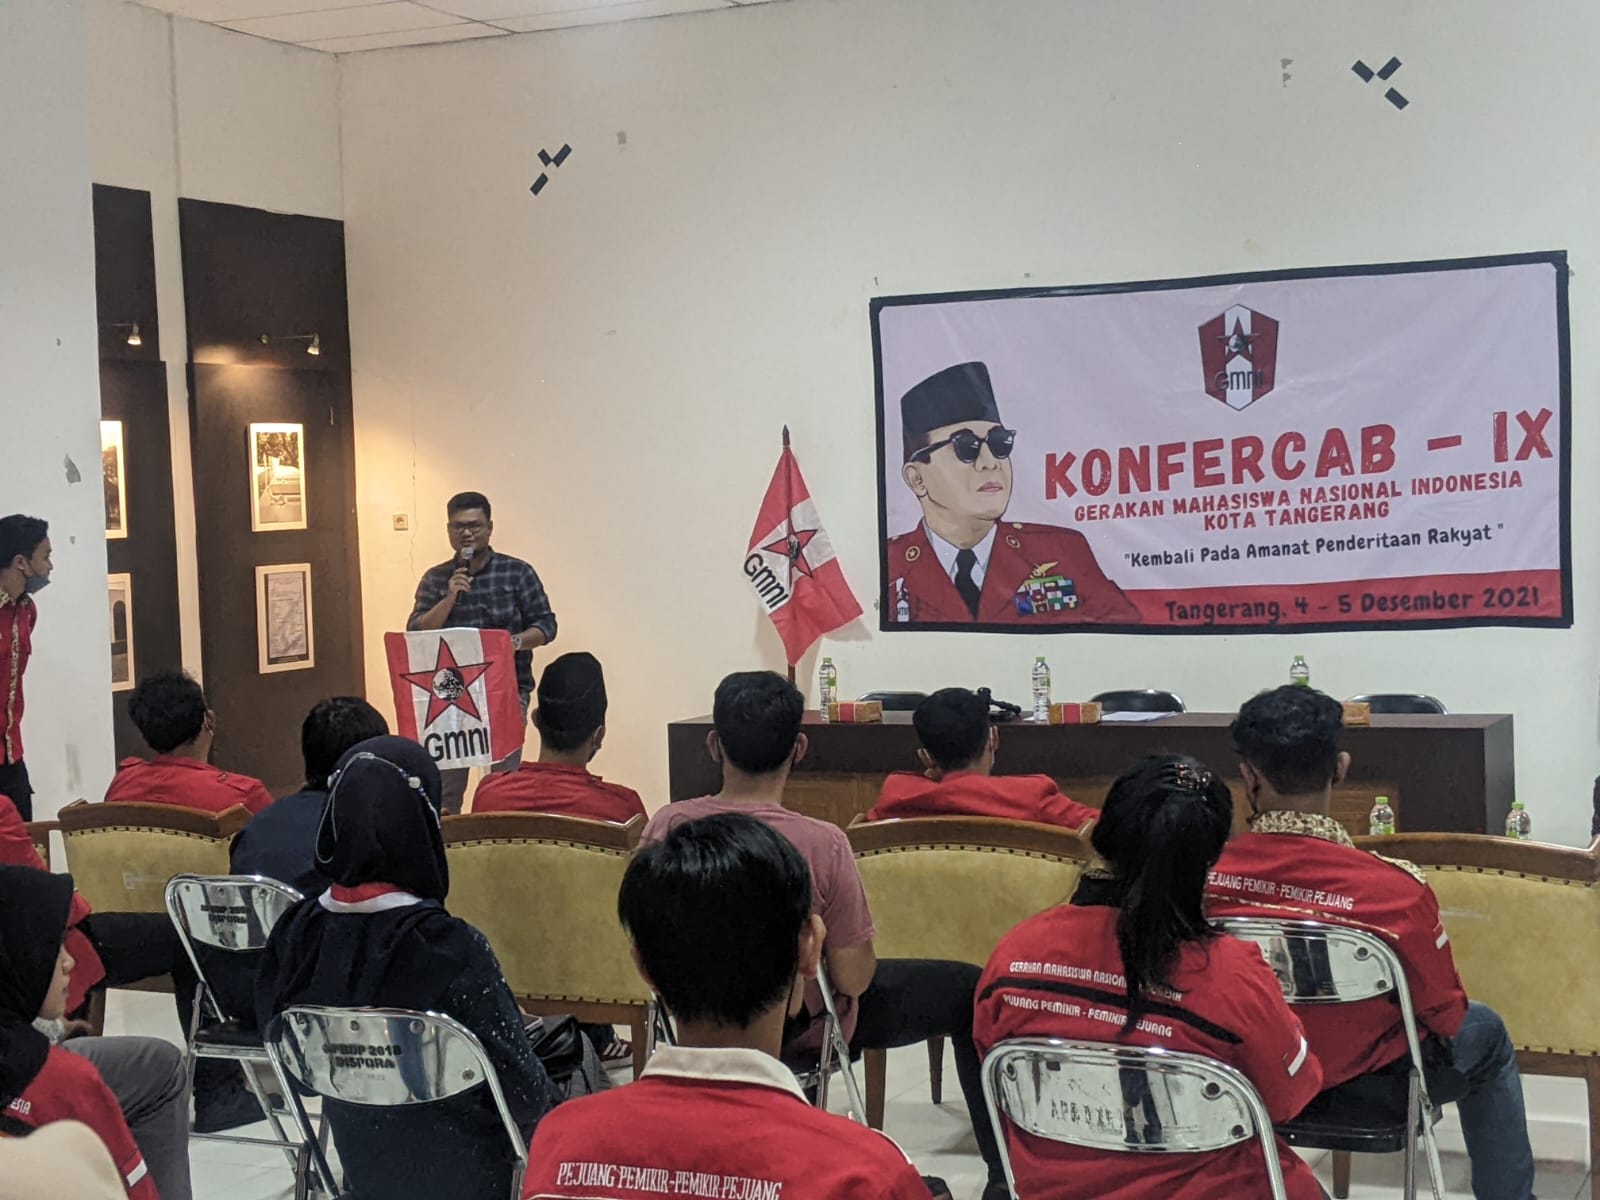 Reza Setiawan akhirnya terpilih sebagai Ketua Dewan Pimpinan Cabang (DPC) Gerakan Mahasiswa Nasional Indonesia (GMNI) Kota Tangerang dalam Konferensi Cabang (Konfercab) IX.